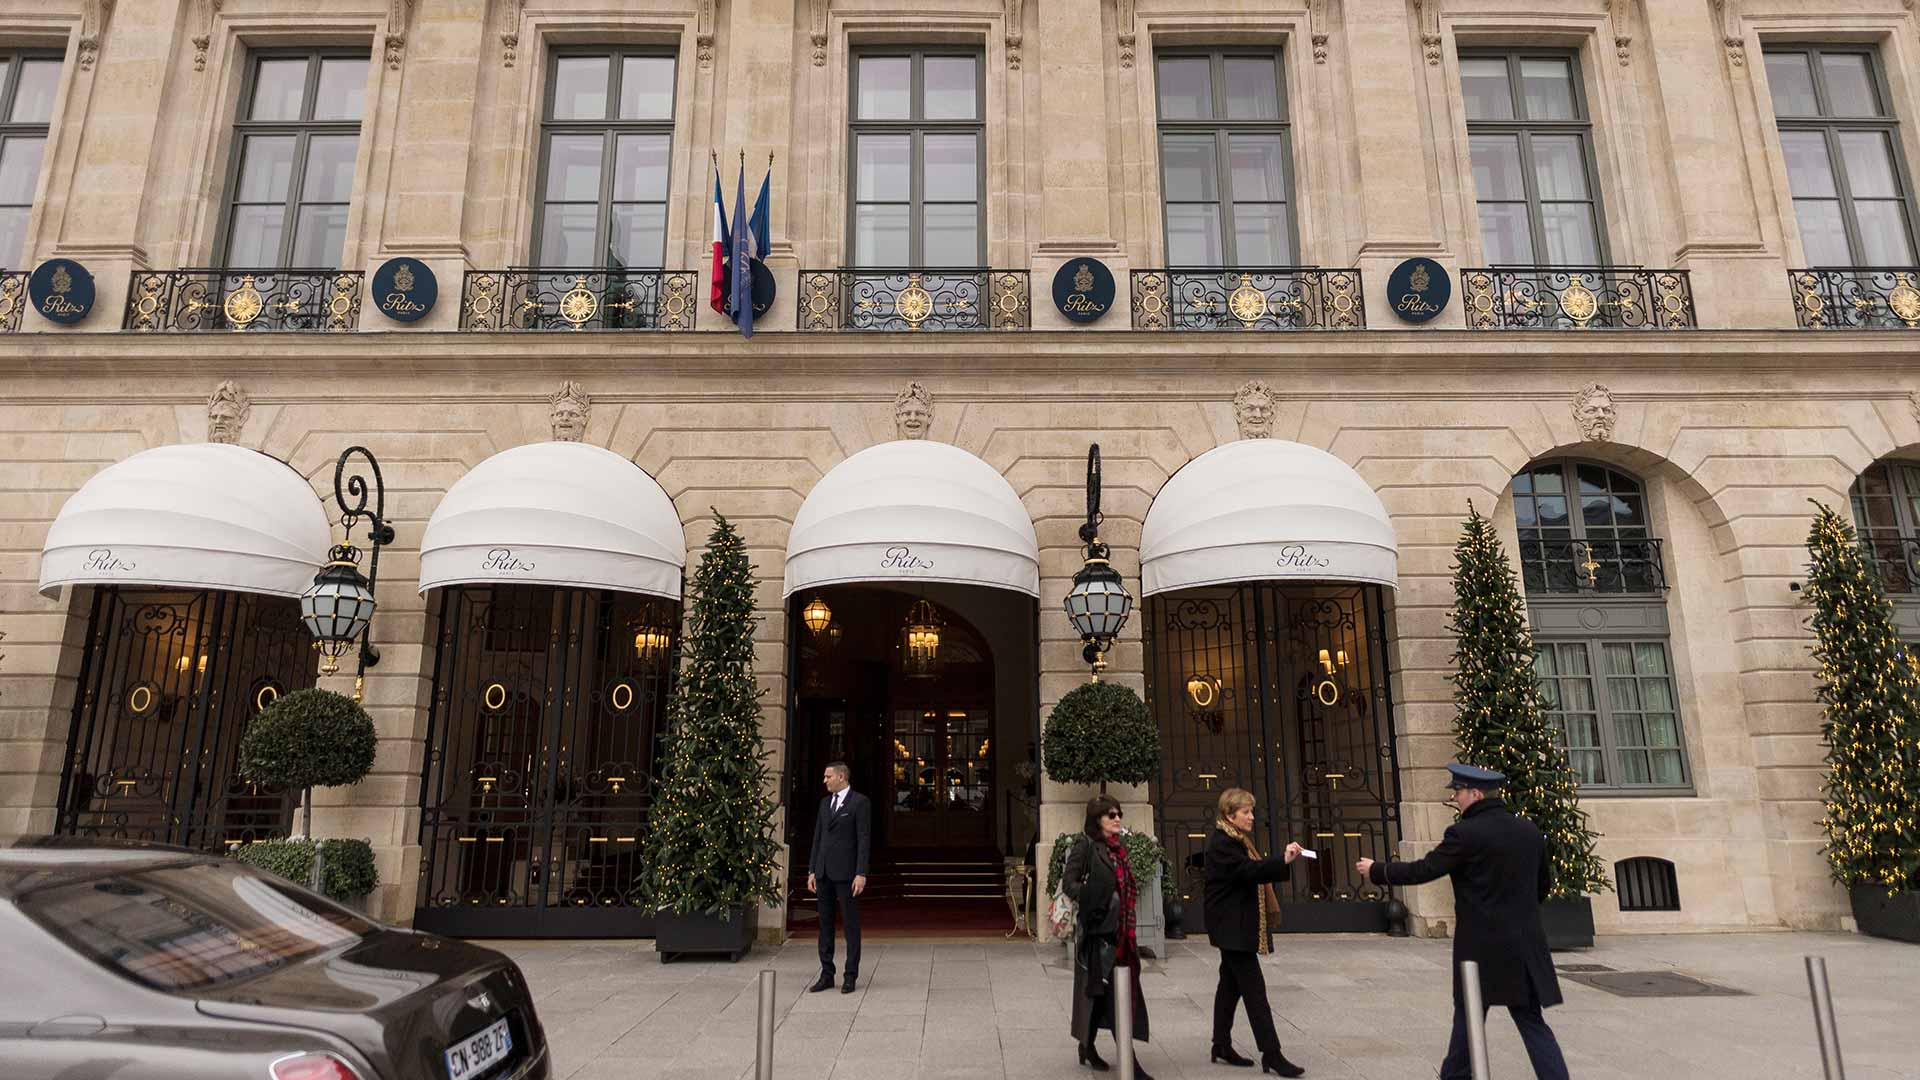 Hallan parte del botín robado en el hotel Ritz de París